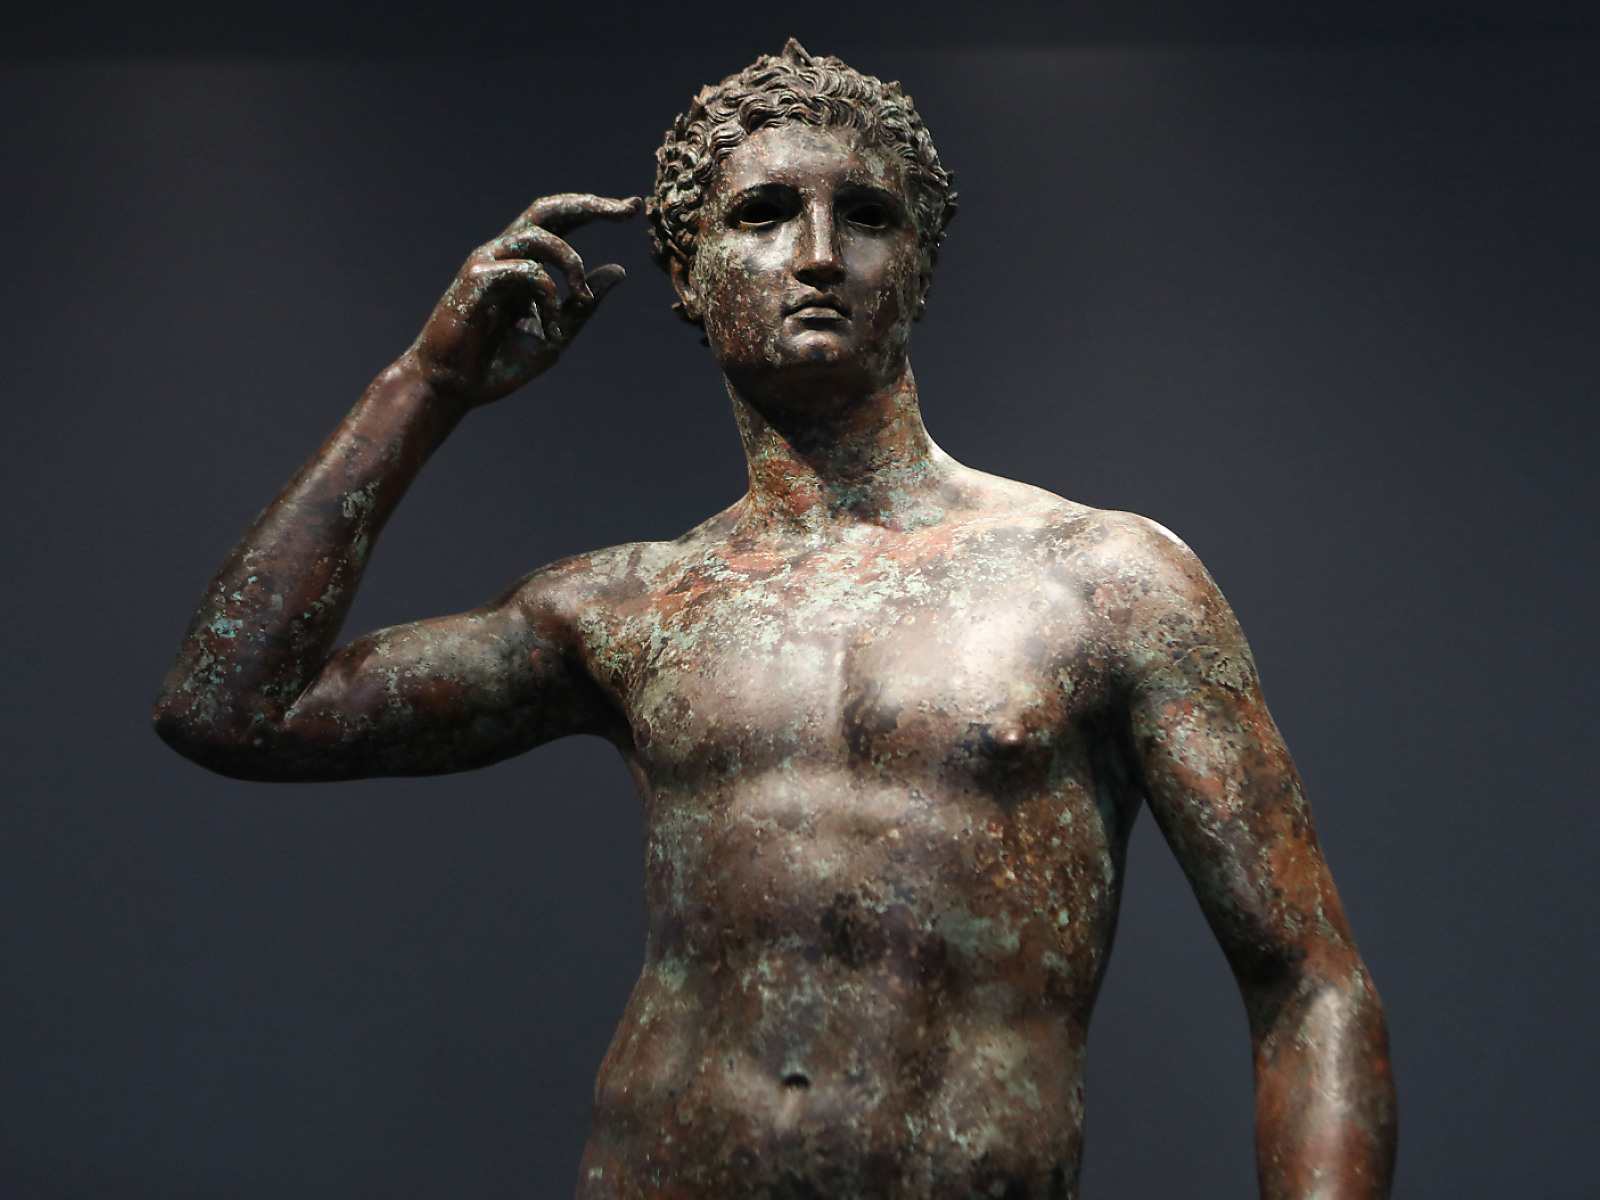 getty-museum soll griechische statue an italien zurückgeben